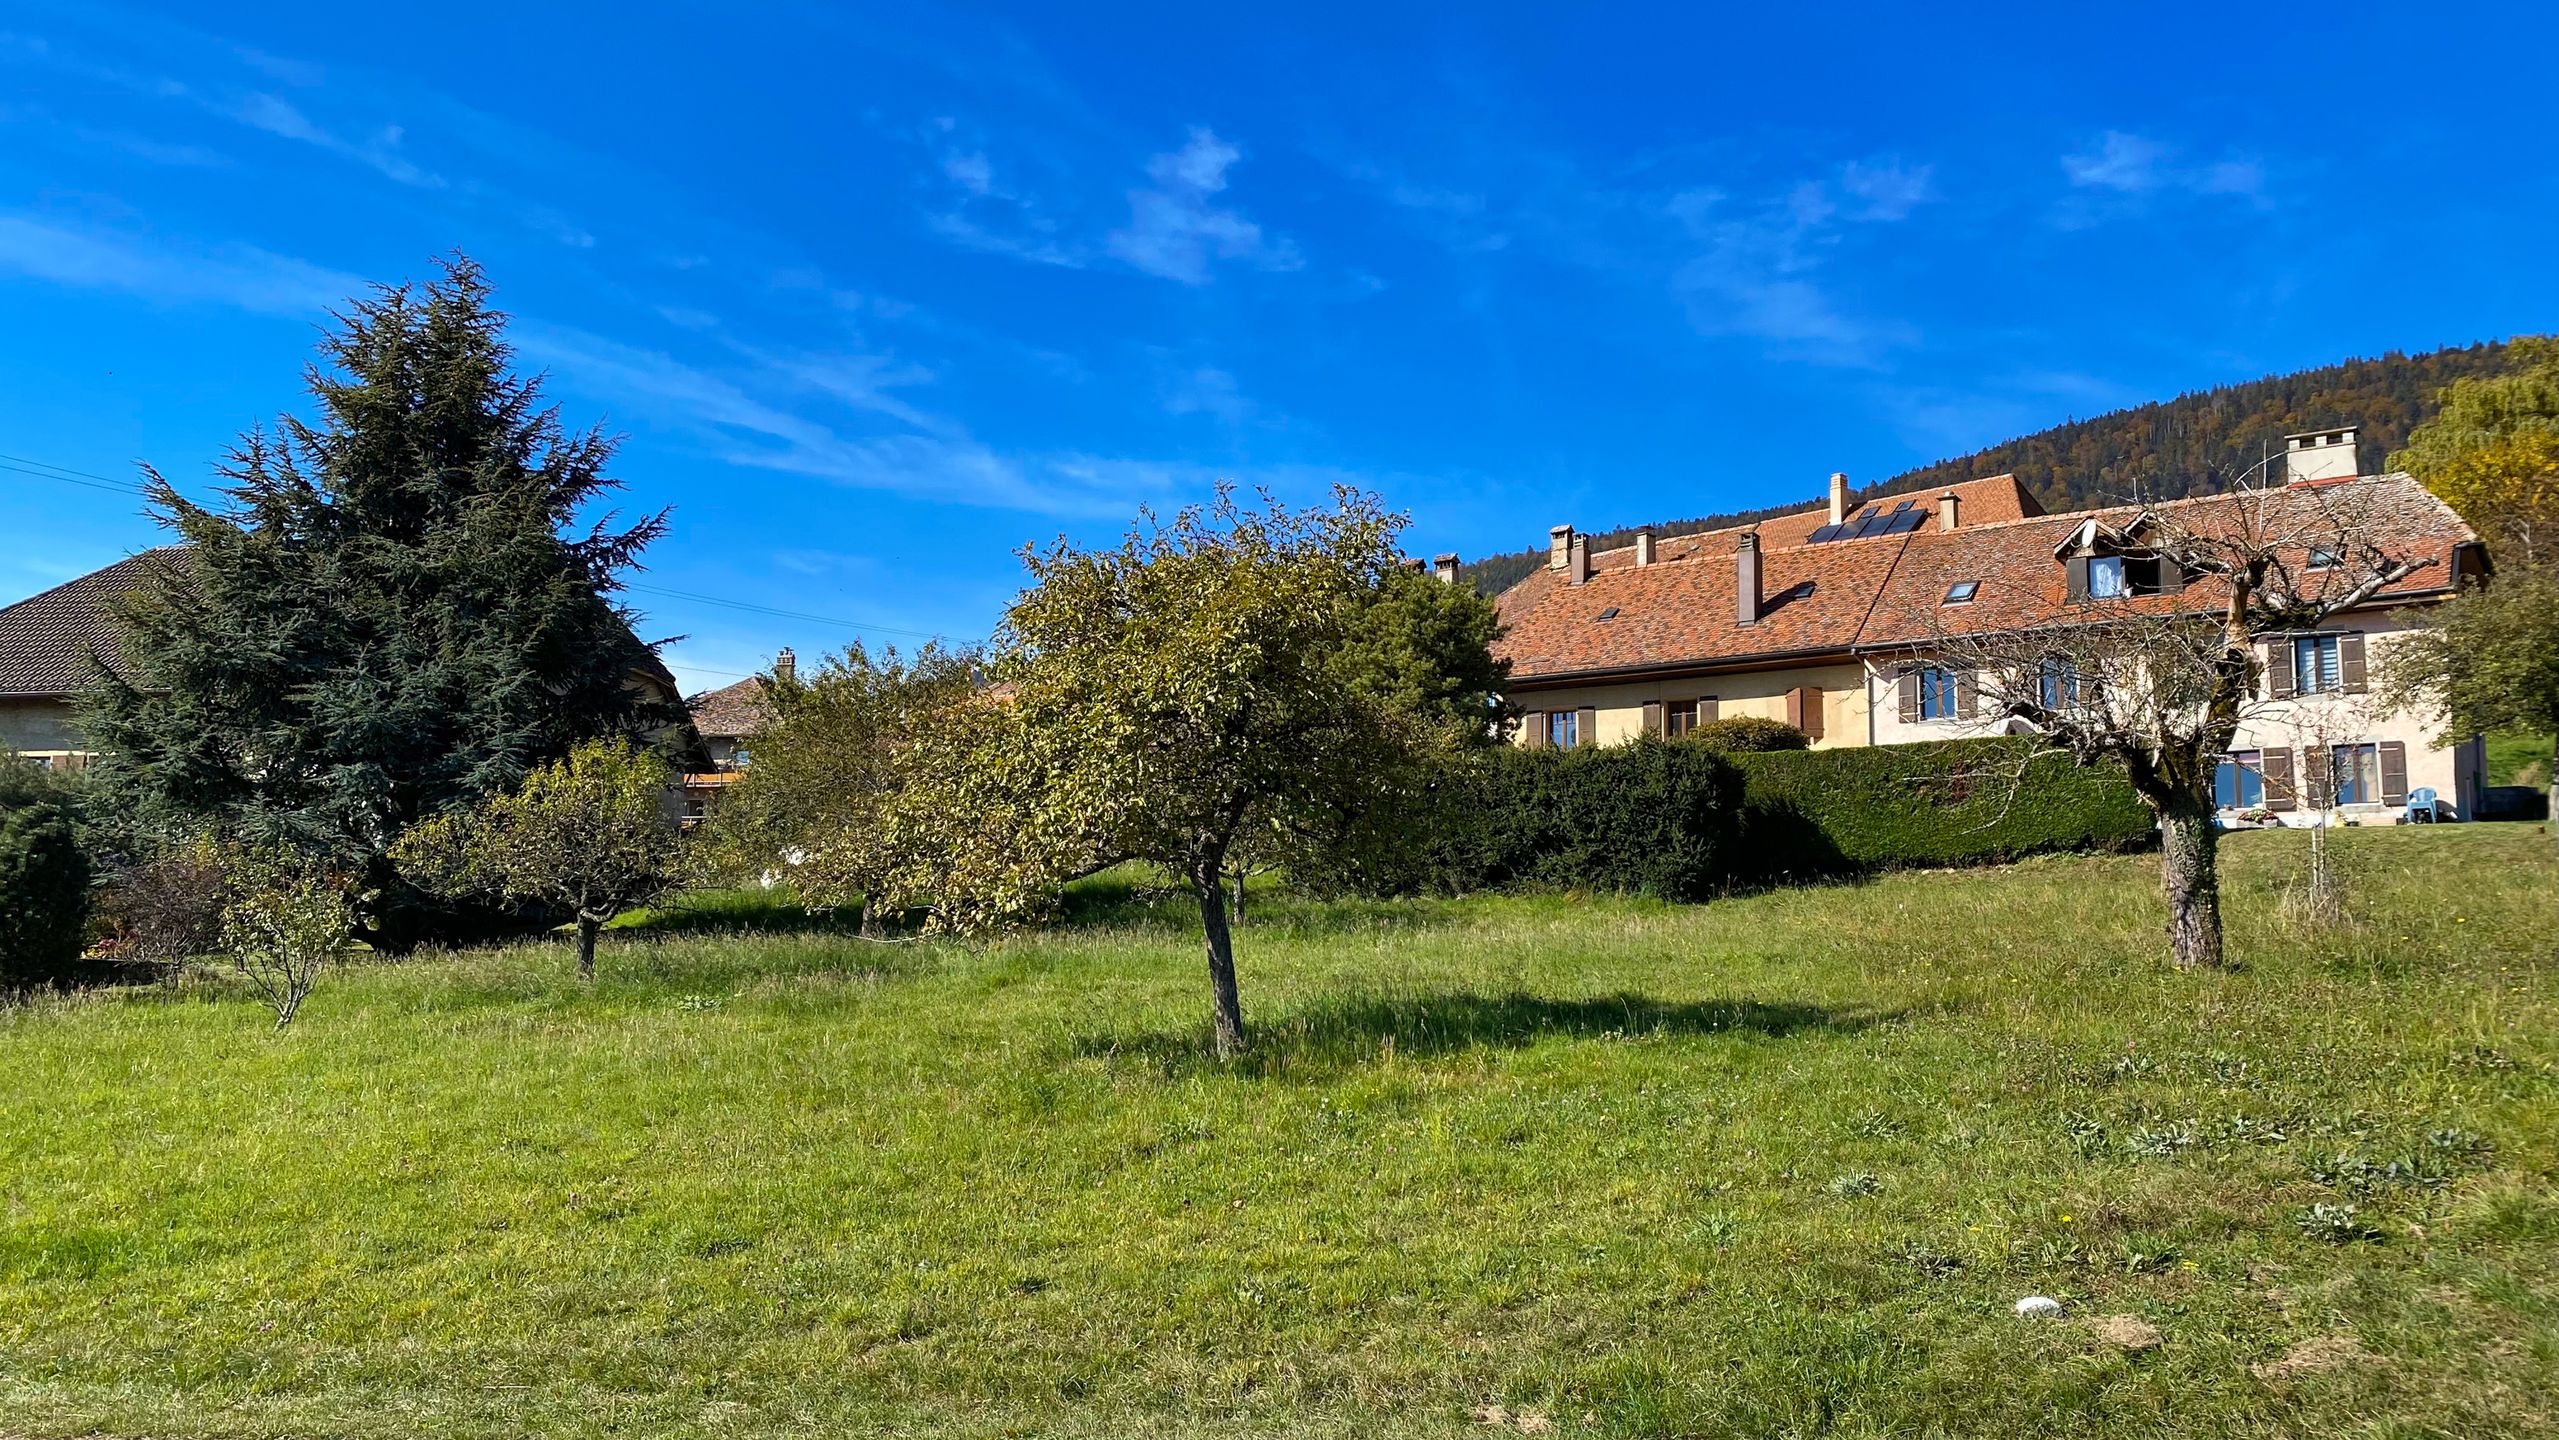 Projet immobilier à Provence avec villas à vendre, le terrain